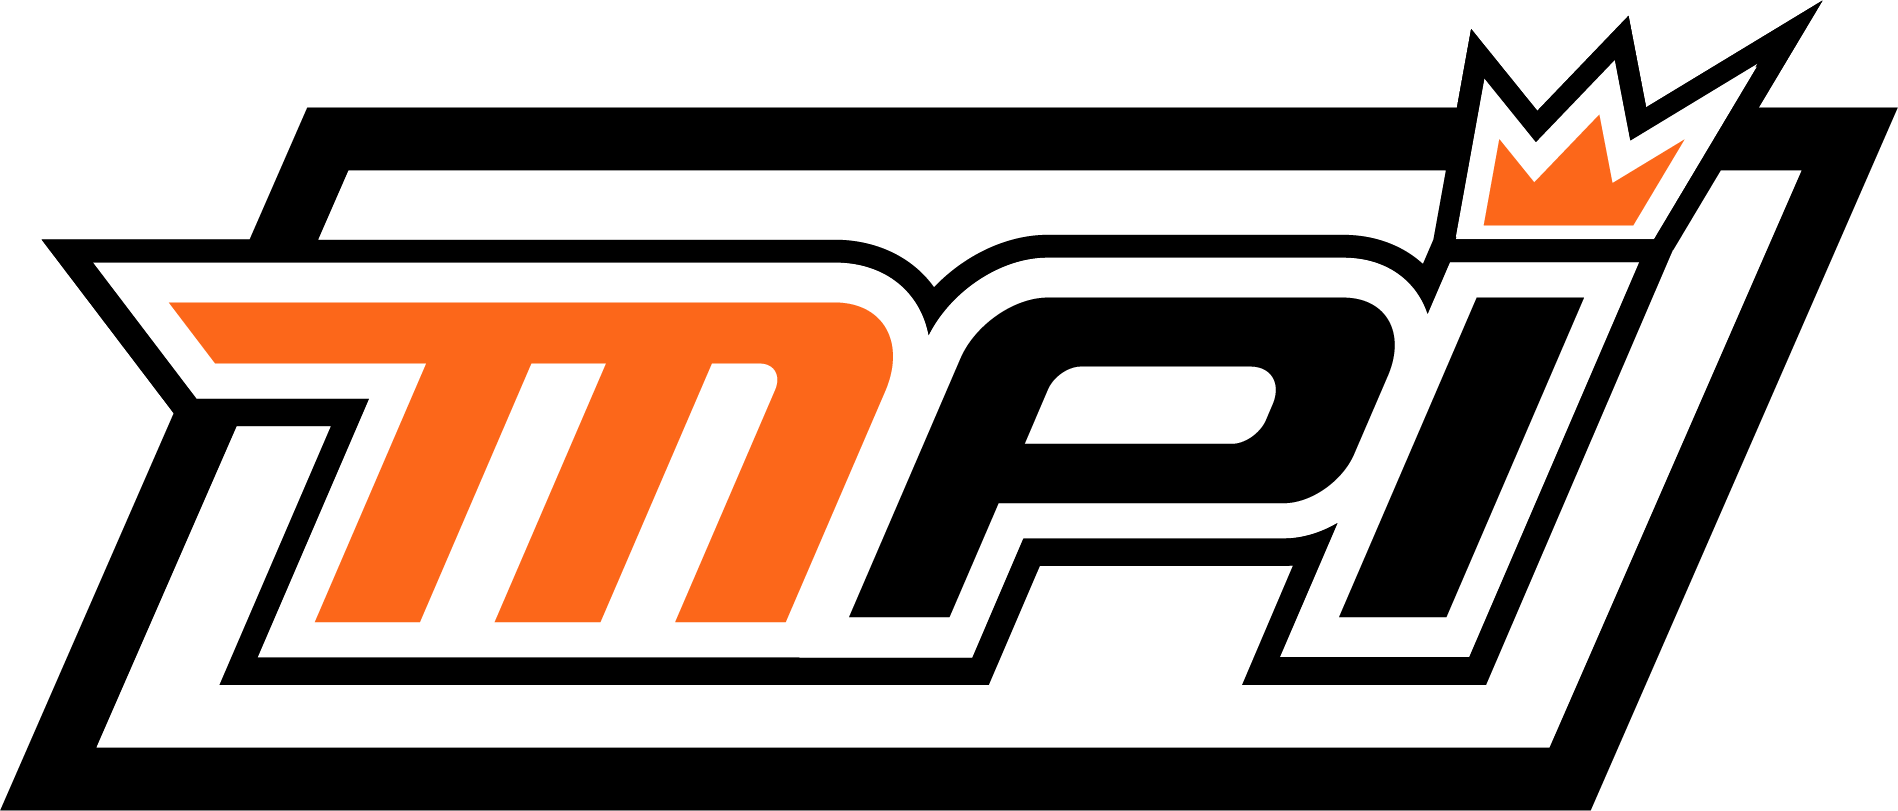 MPI Logo - MPI-logo-light - NASCAR Racing Experience